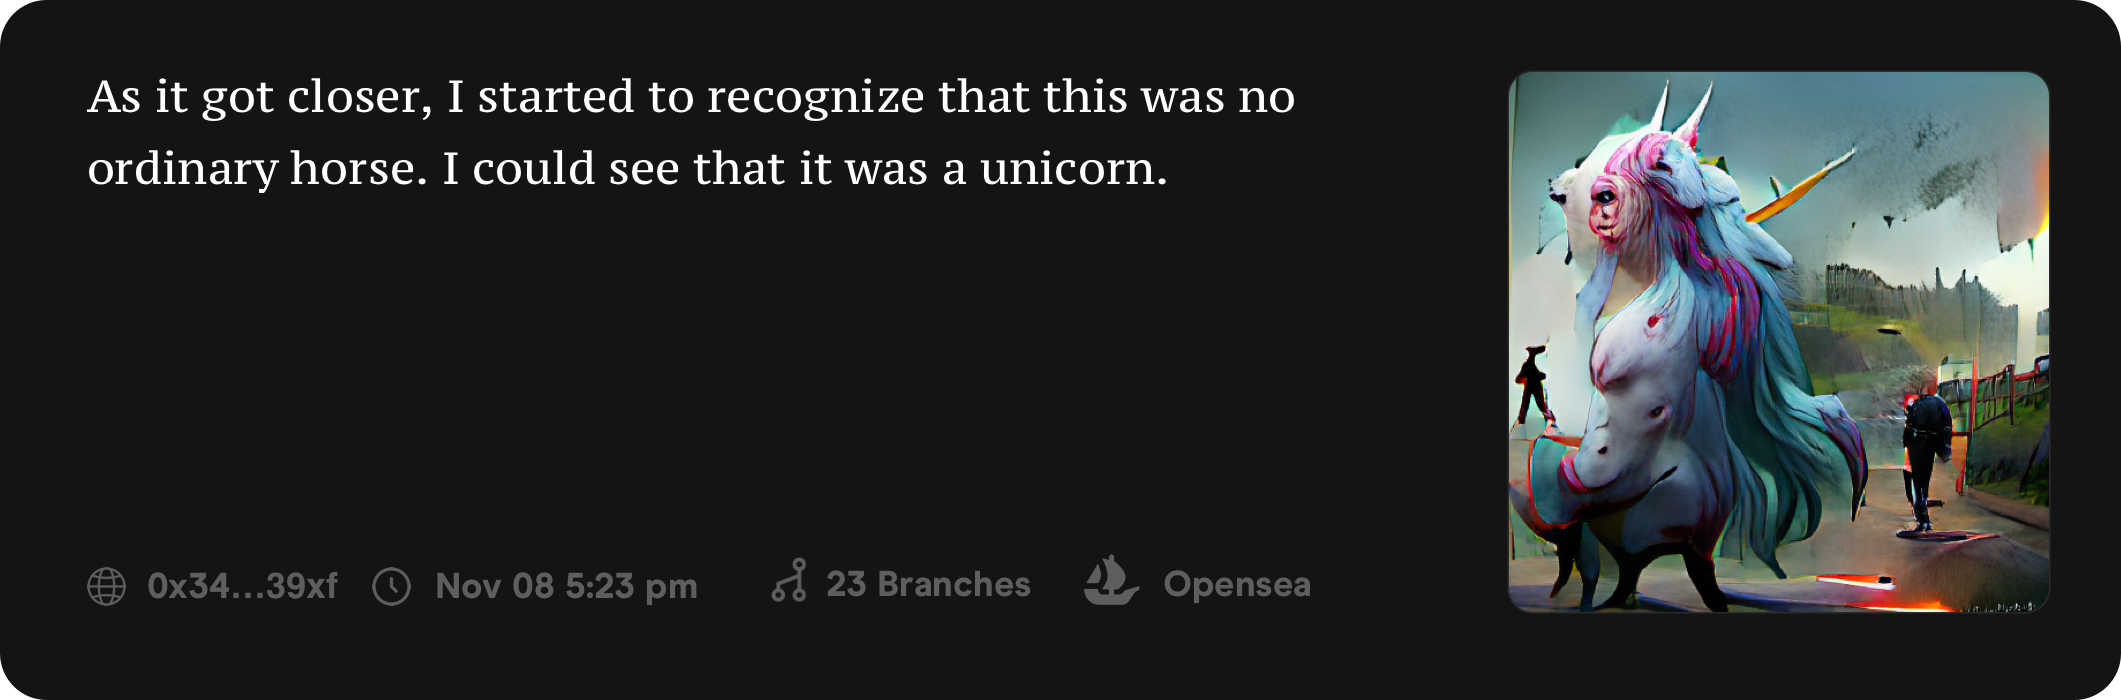 AI created a unicorn!